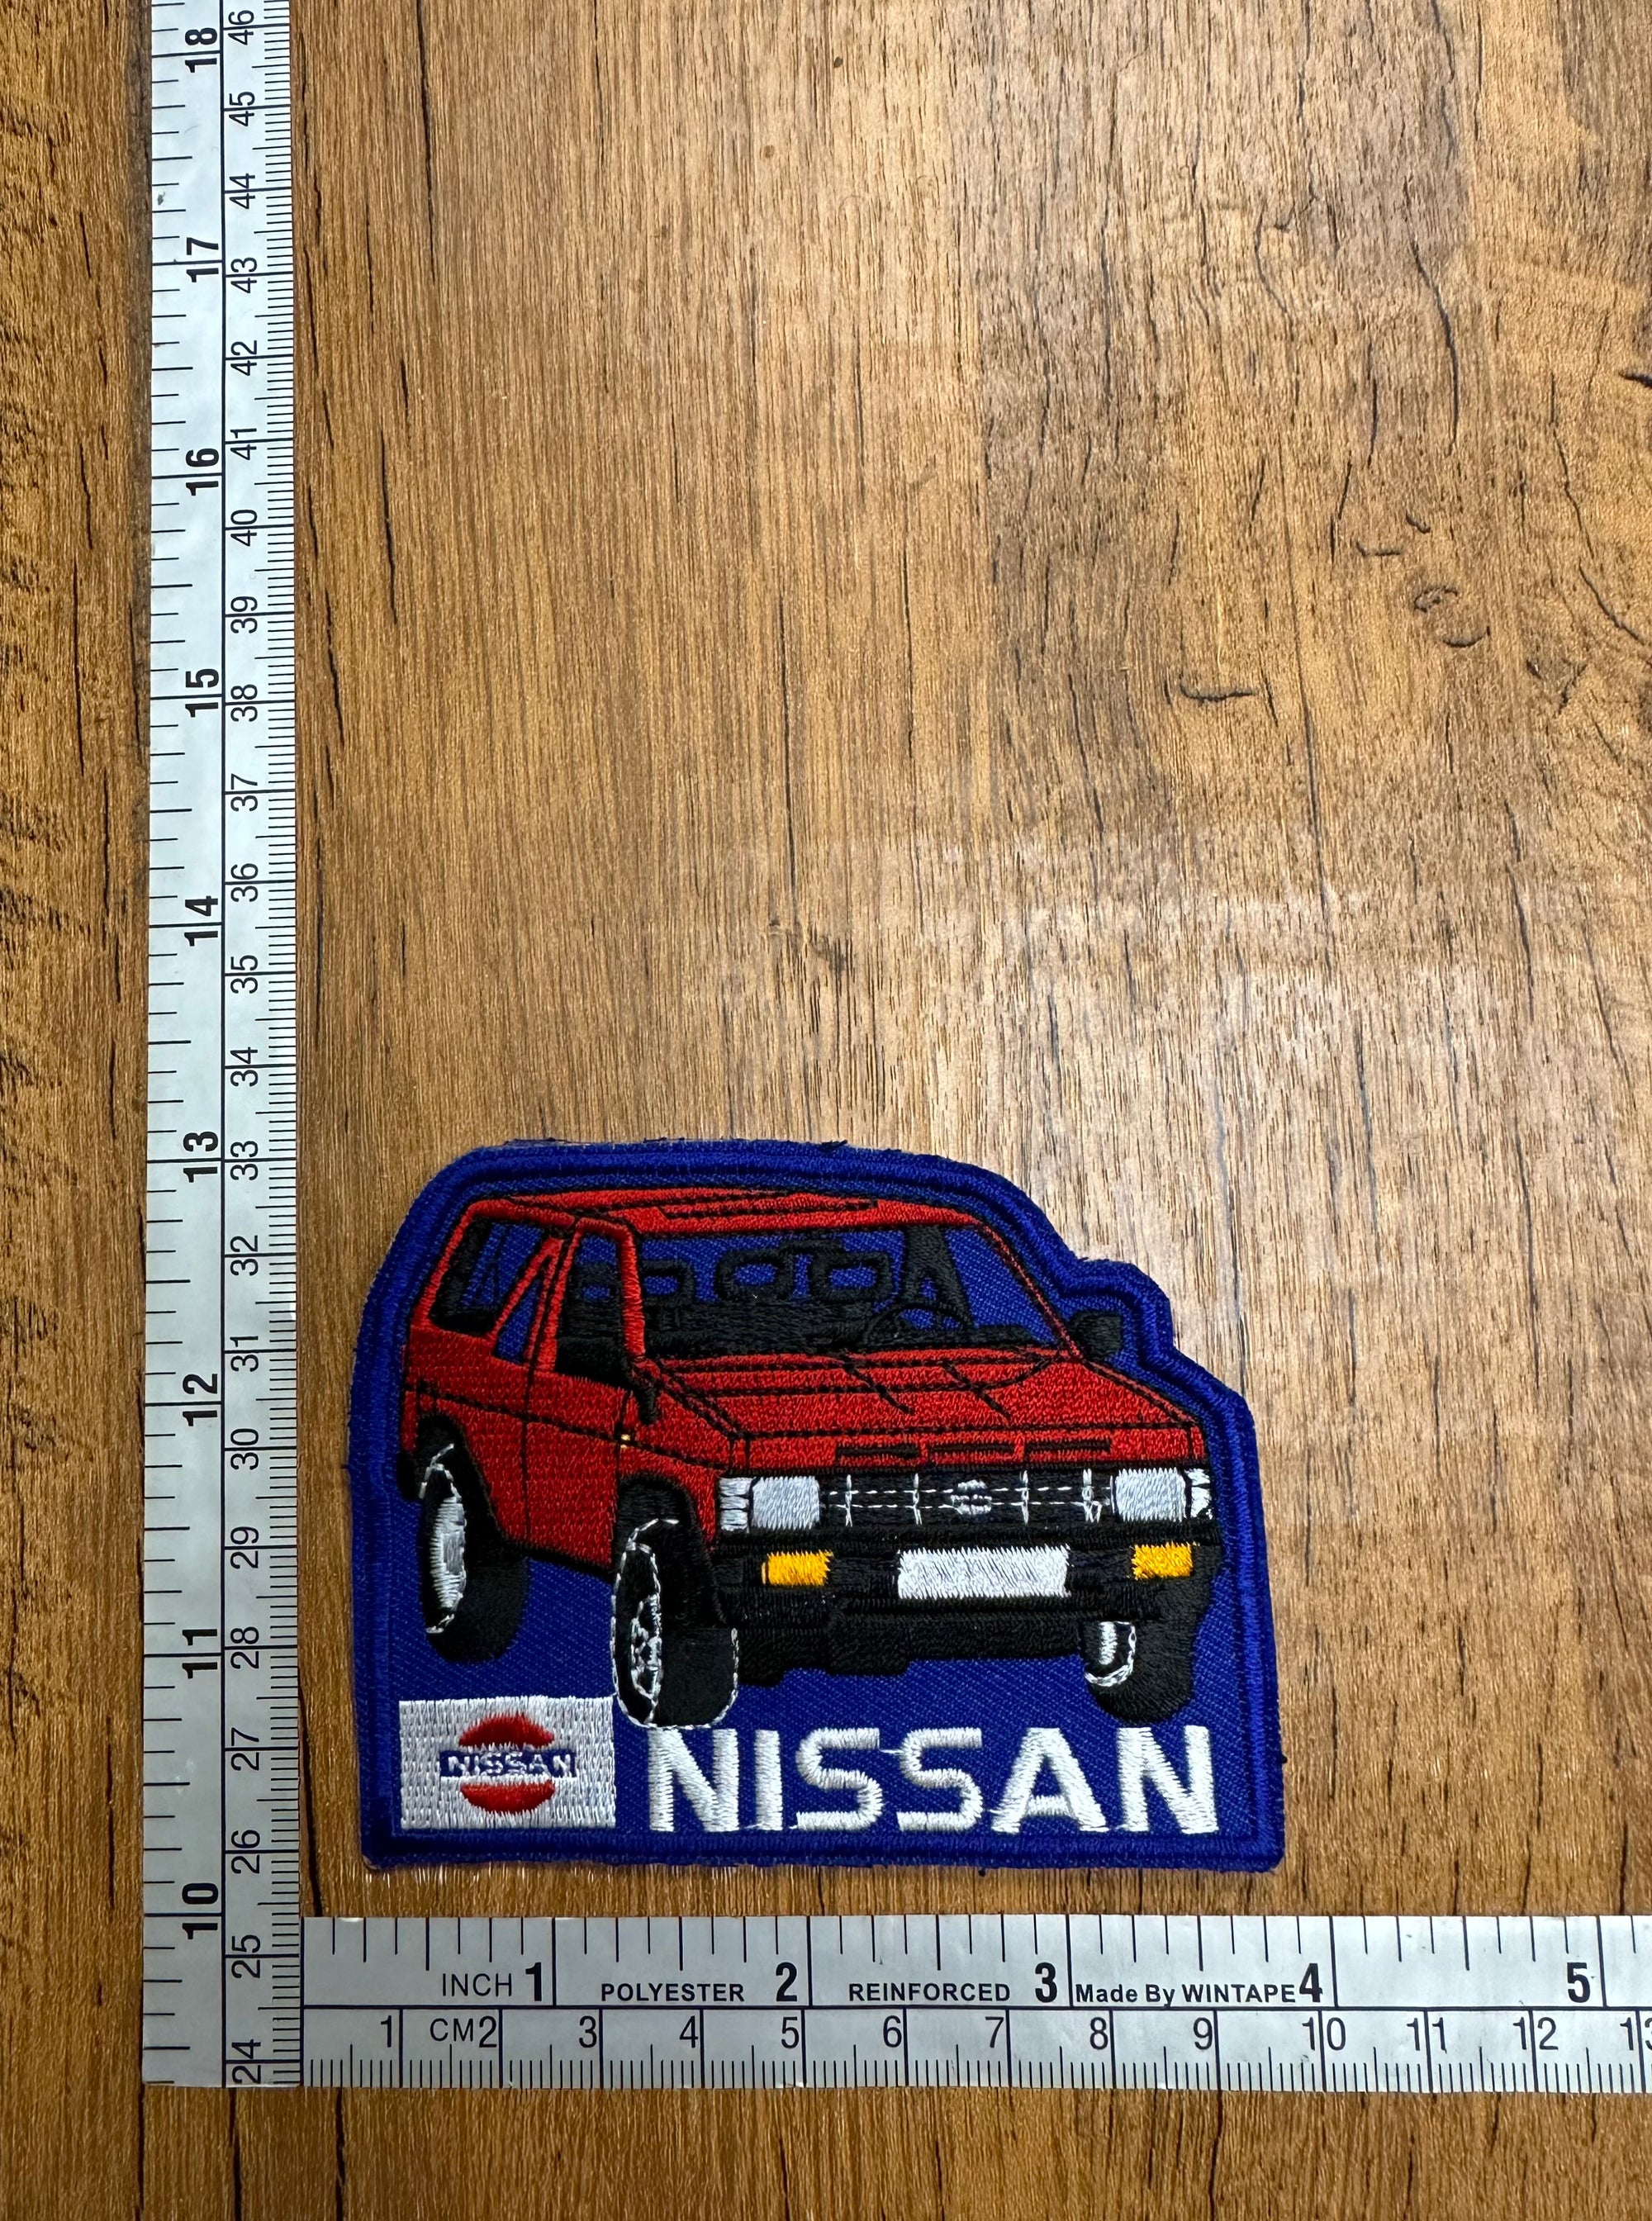 Vintage Nissan